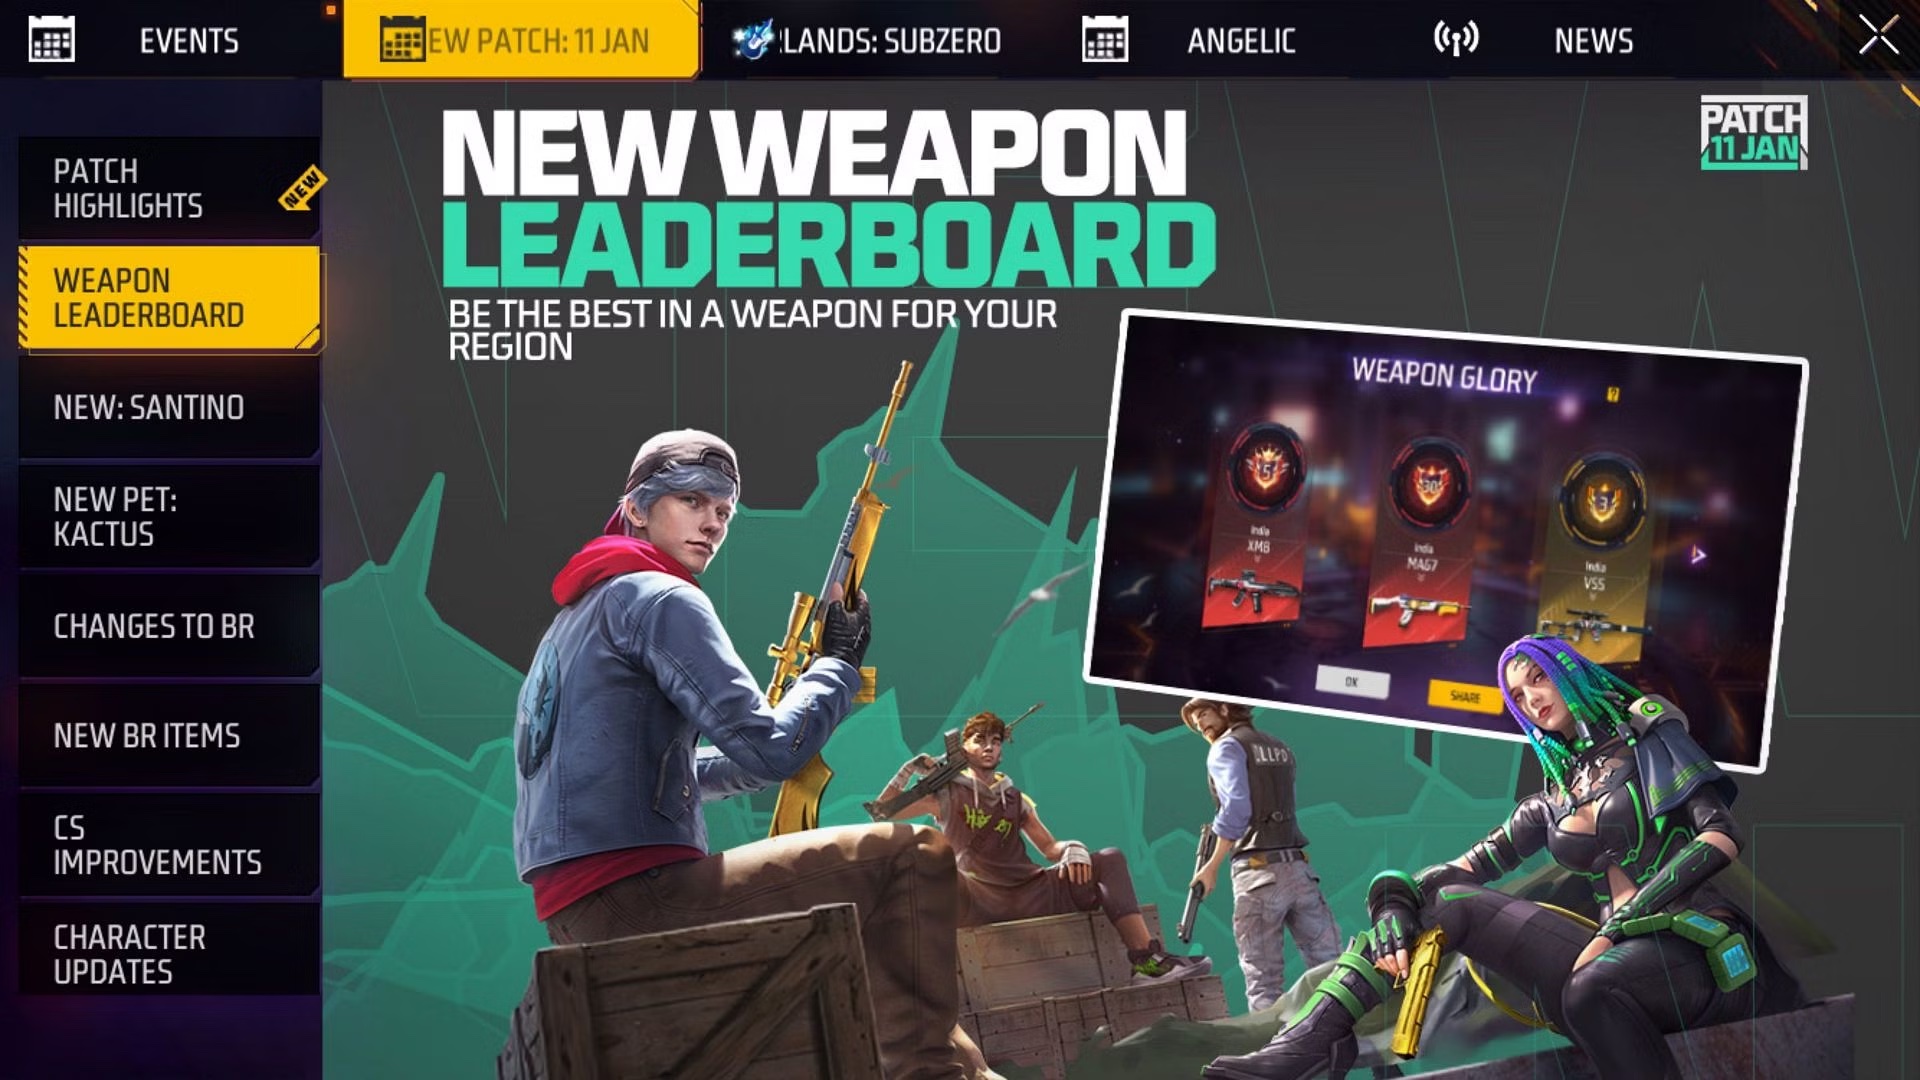 Bảng xếp hạng vũ khí mới sẽ hiển thị những vũ khí mà người chơi dùng tốt nhất